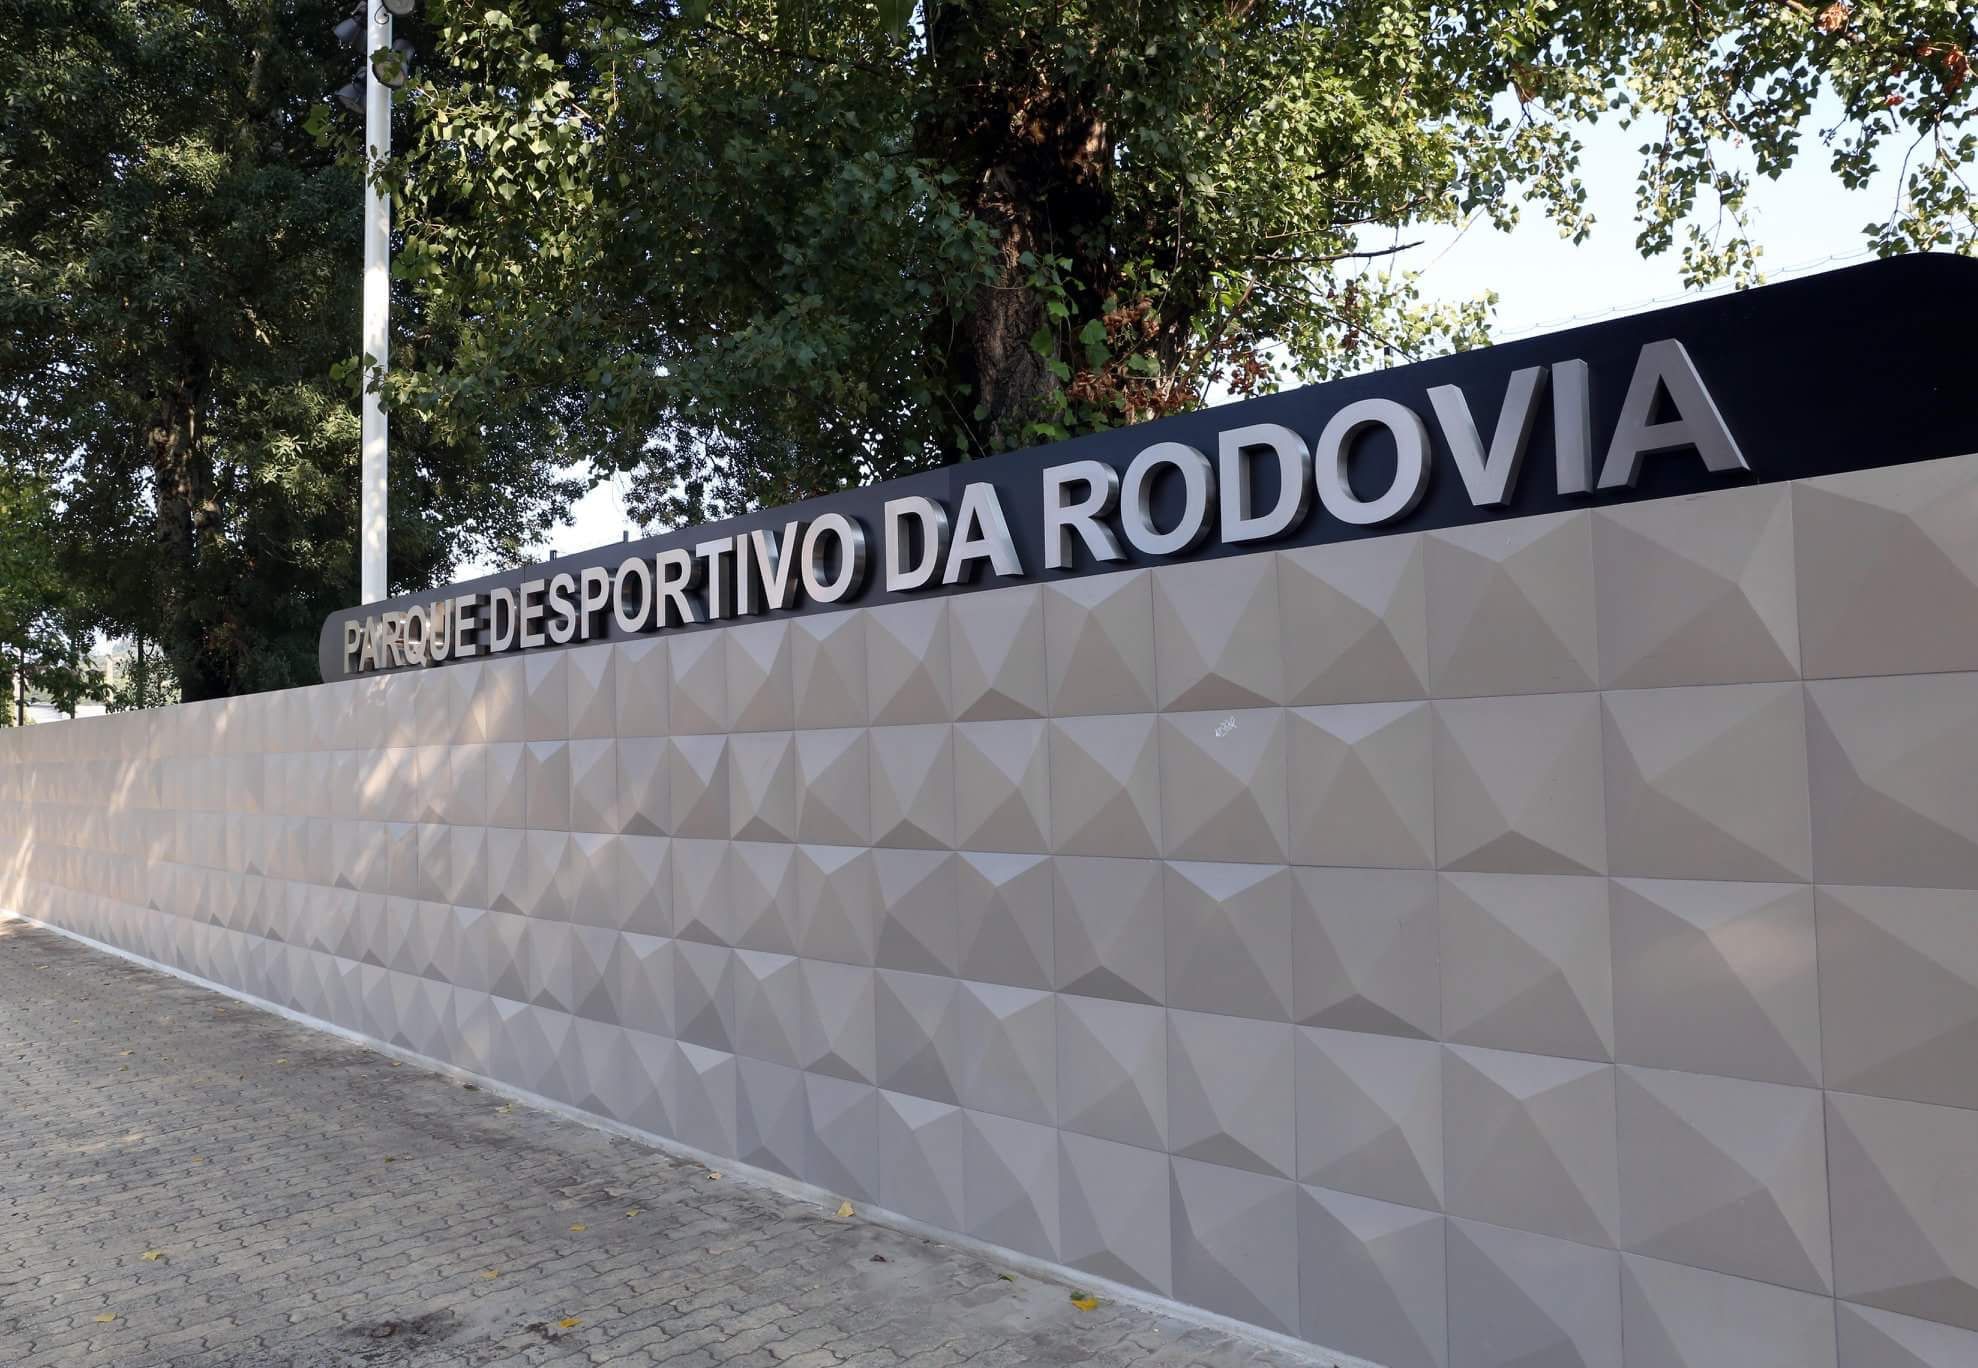 Parque Desportivo da Rodovia – Braga